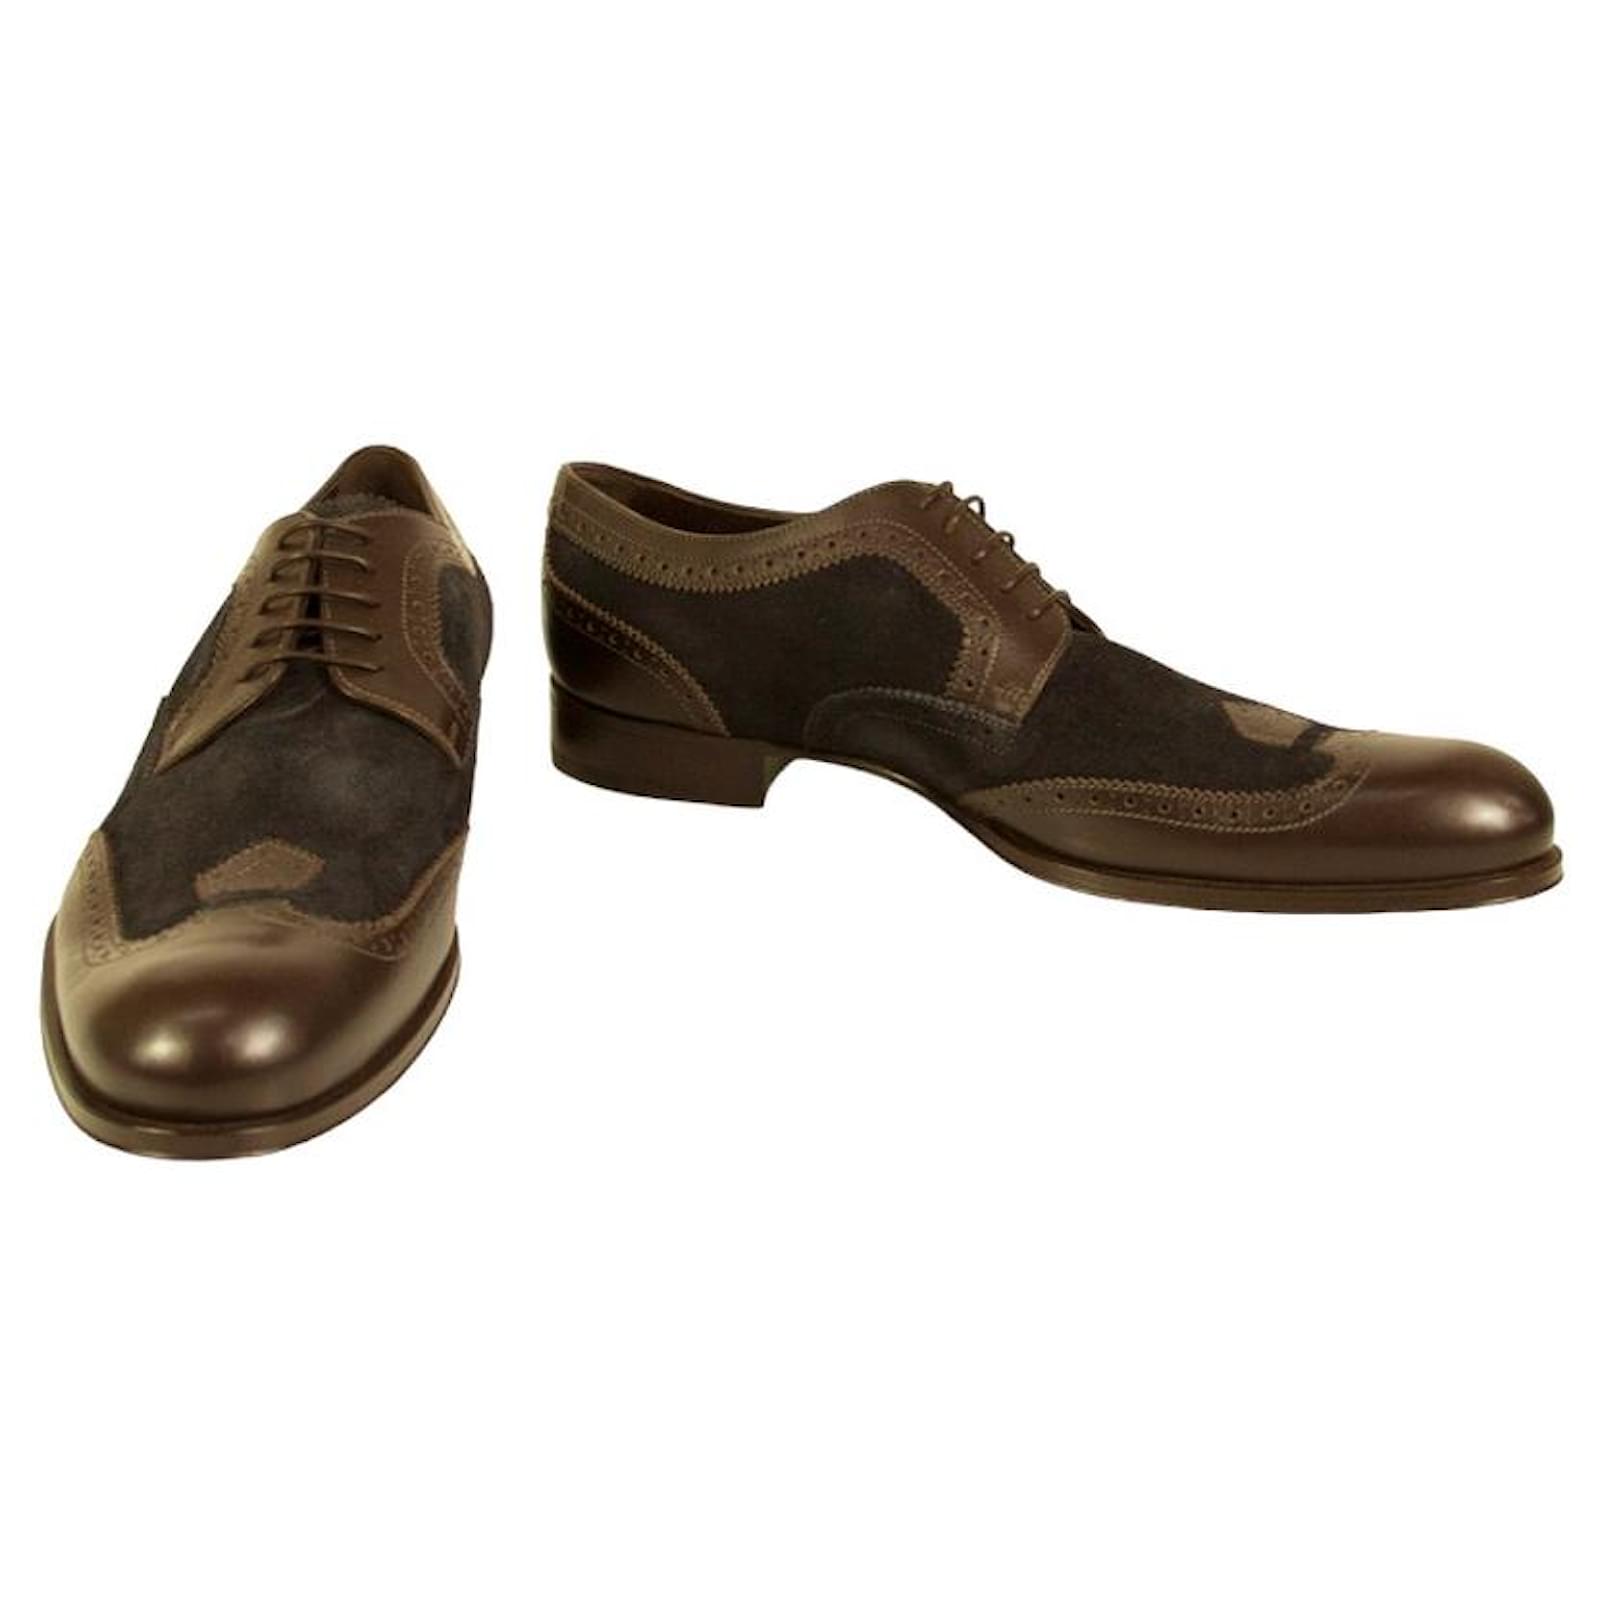 Louis Vuitton, Shoes, Louis Vuitton Lv Dress Shoes Derby Leather Black  Oxford Mens Size Uk 7 Us 8